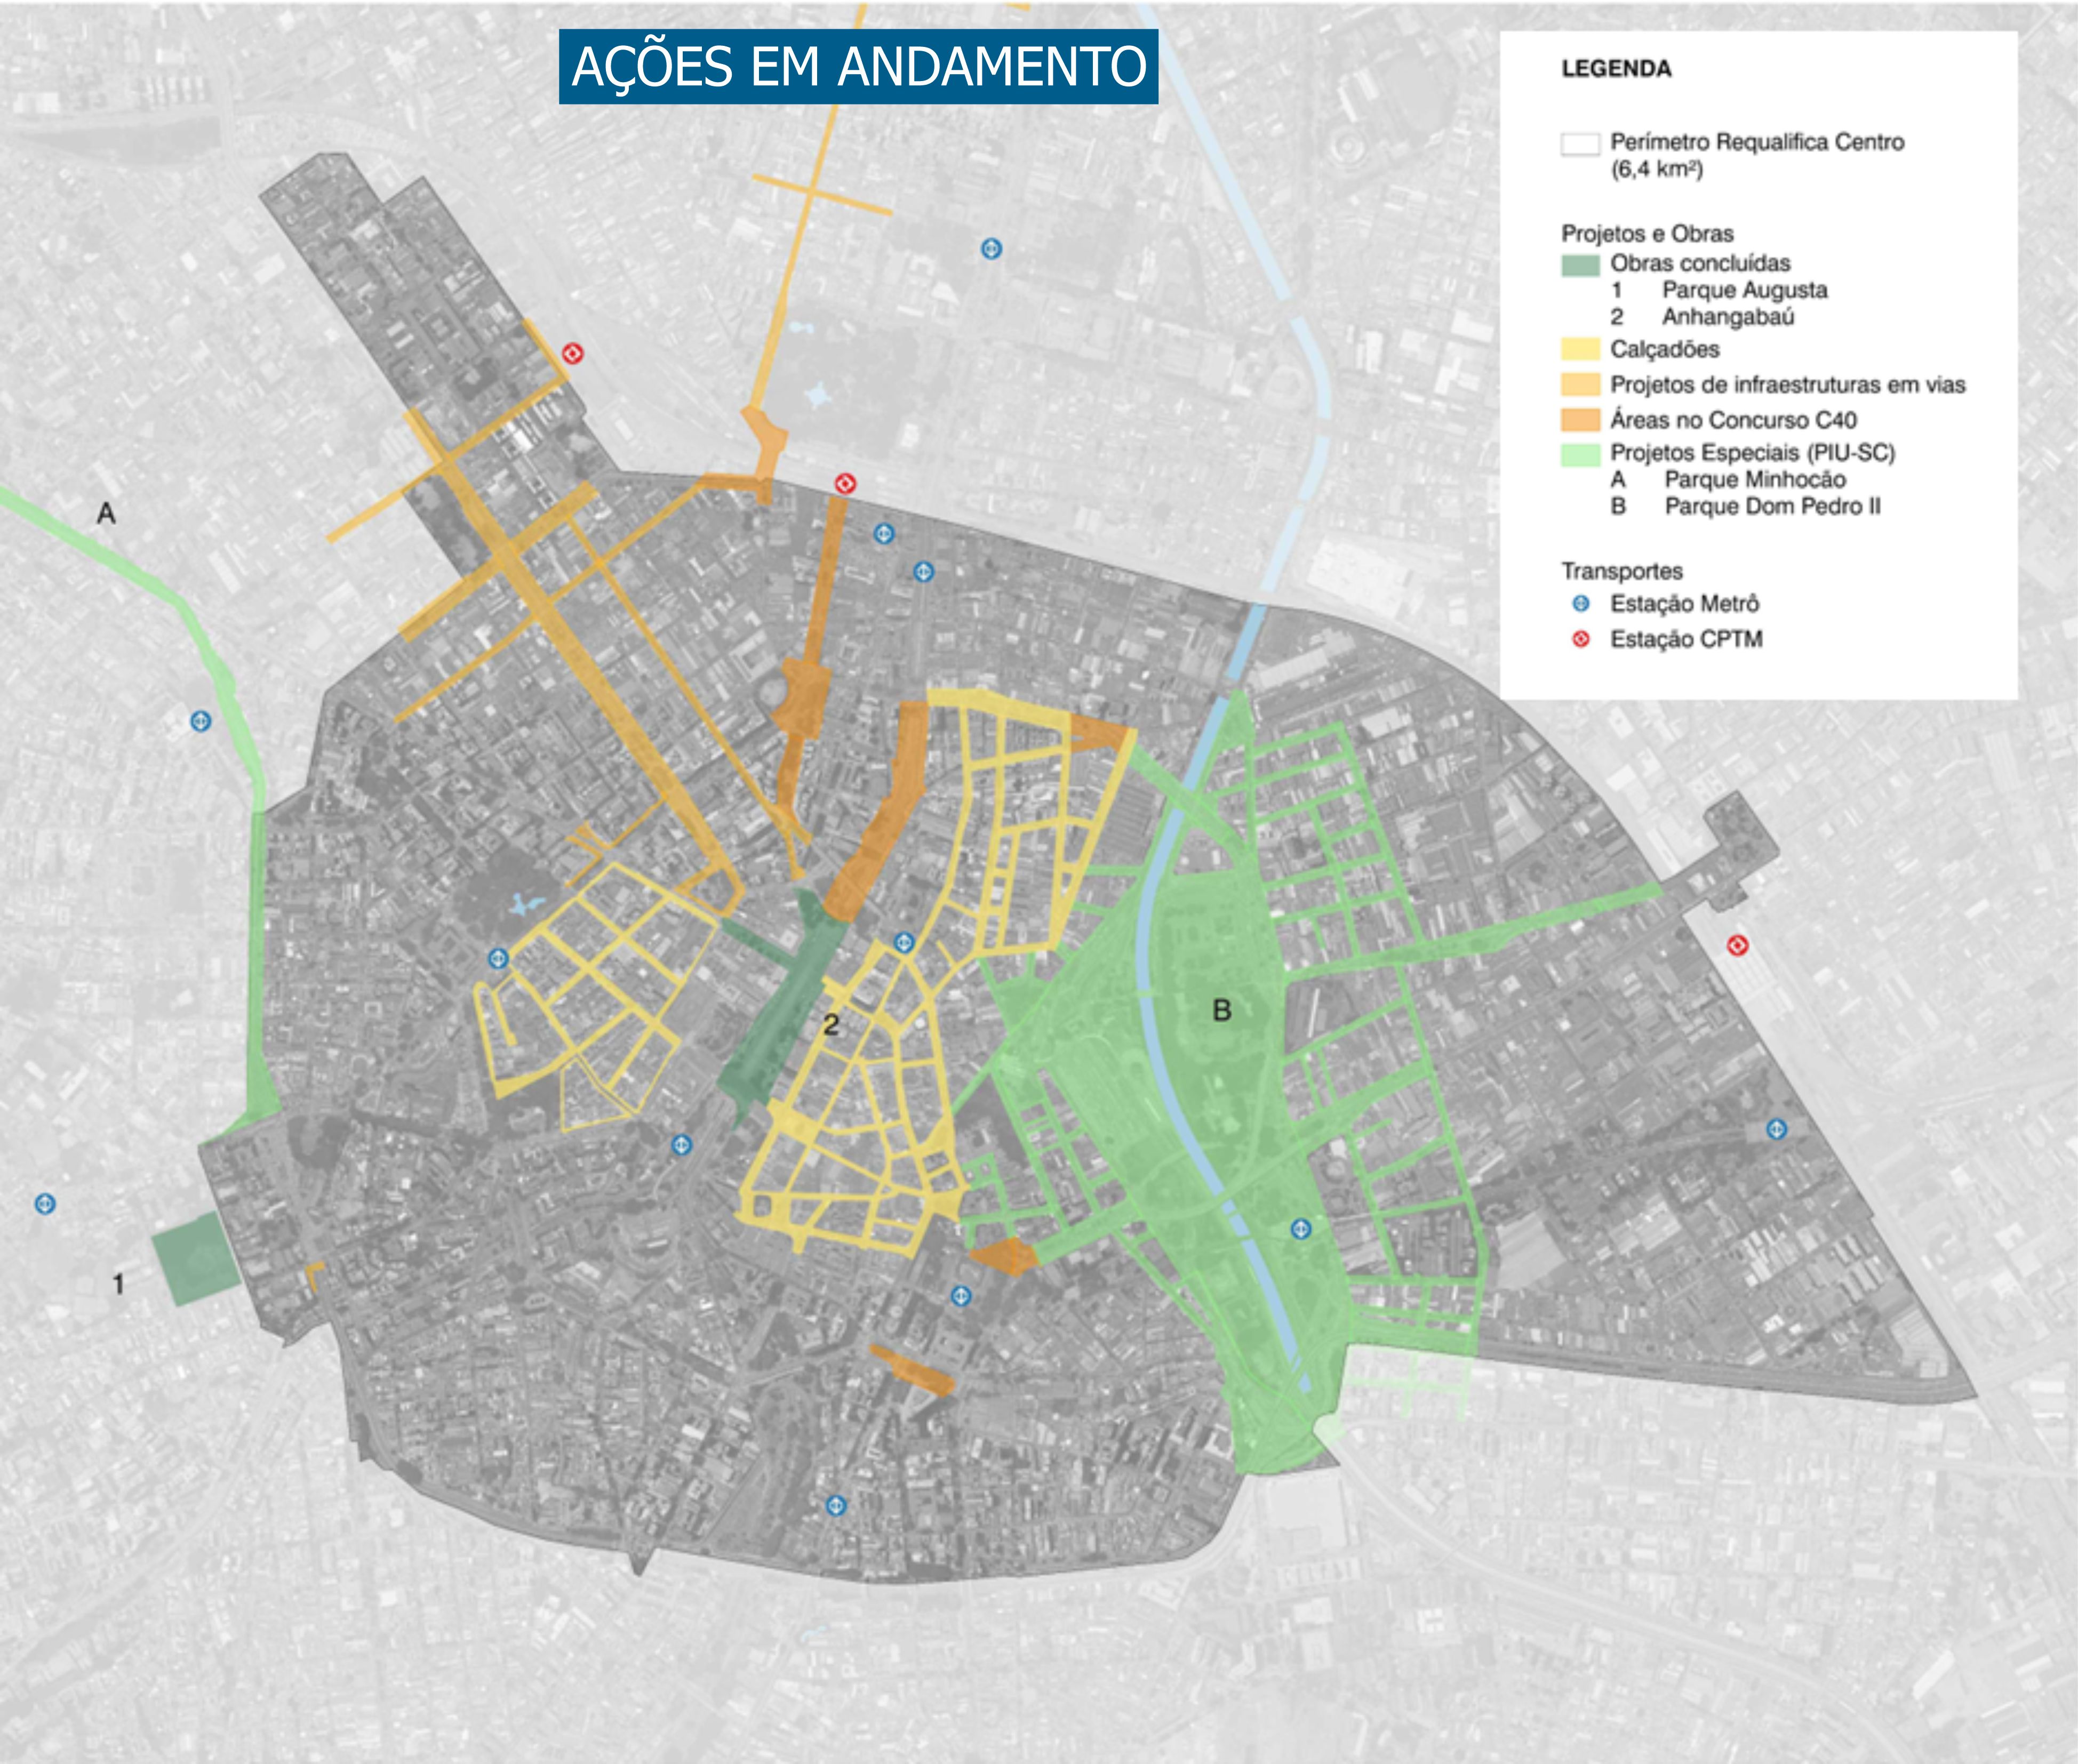 vista aérea de mapa da cidade de são paulo representando as ações em andamento do projeto "Todos pelo centro"